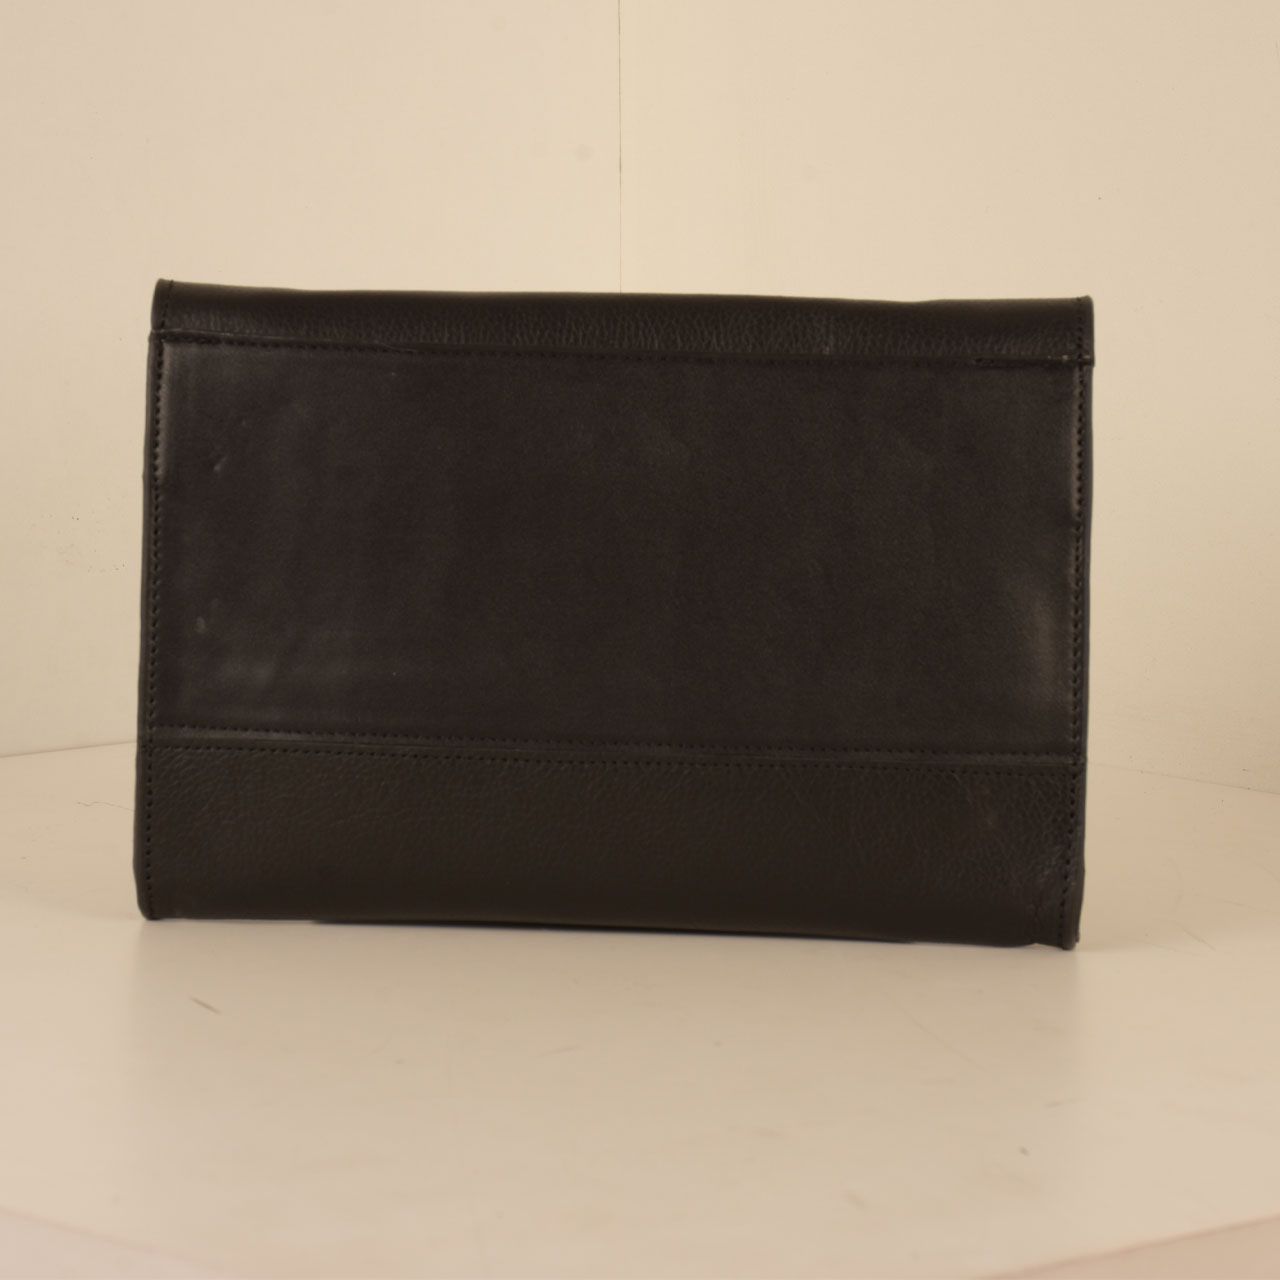 کیف دوشی زنانه پارینه چرم مدل PLV188-12-1510 -  - 36